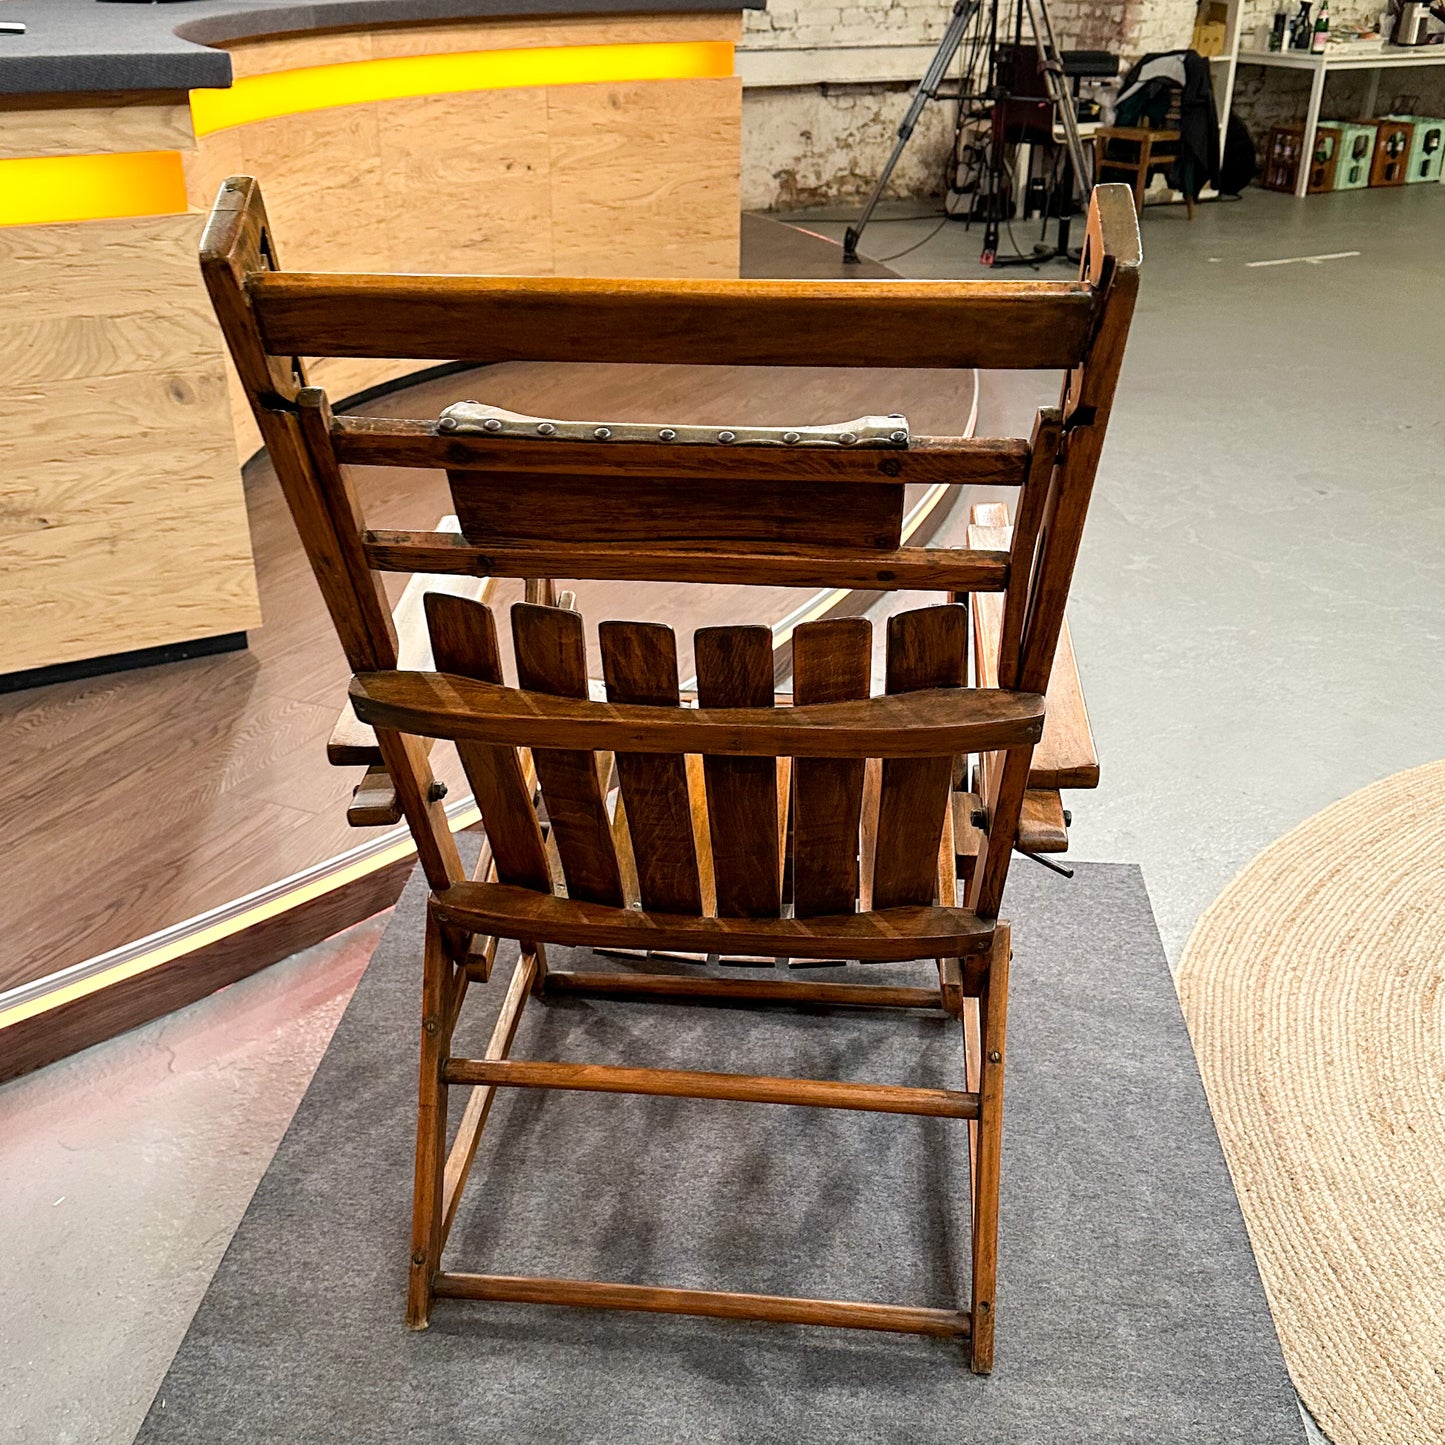 Liegestuhl „Siesta Medizinal“ von Hands und Wassili Luckardt für Thonet, 1930er Jahre, restauriert - aus Bares für Rares 2023